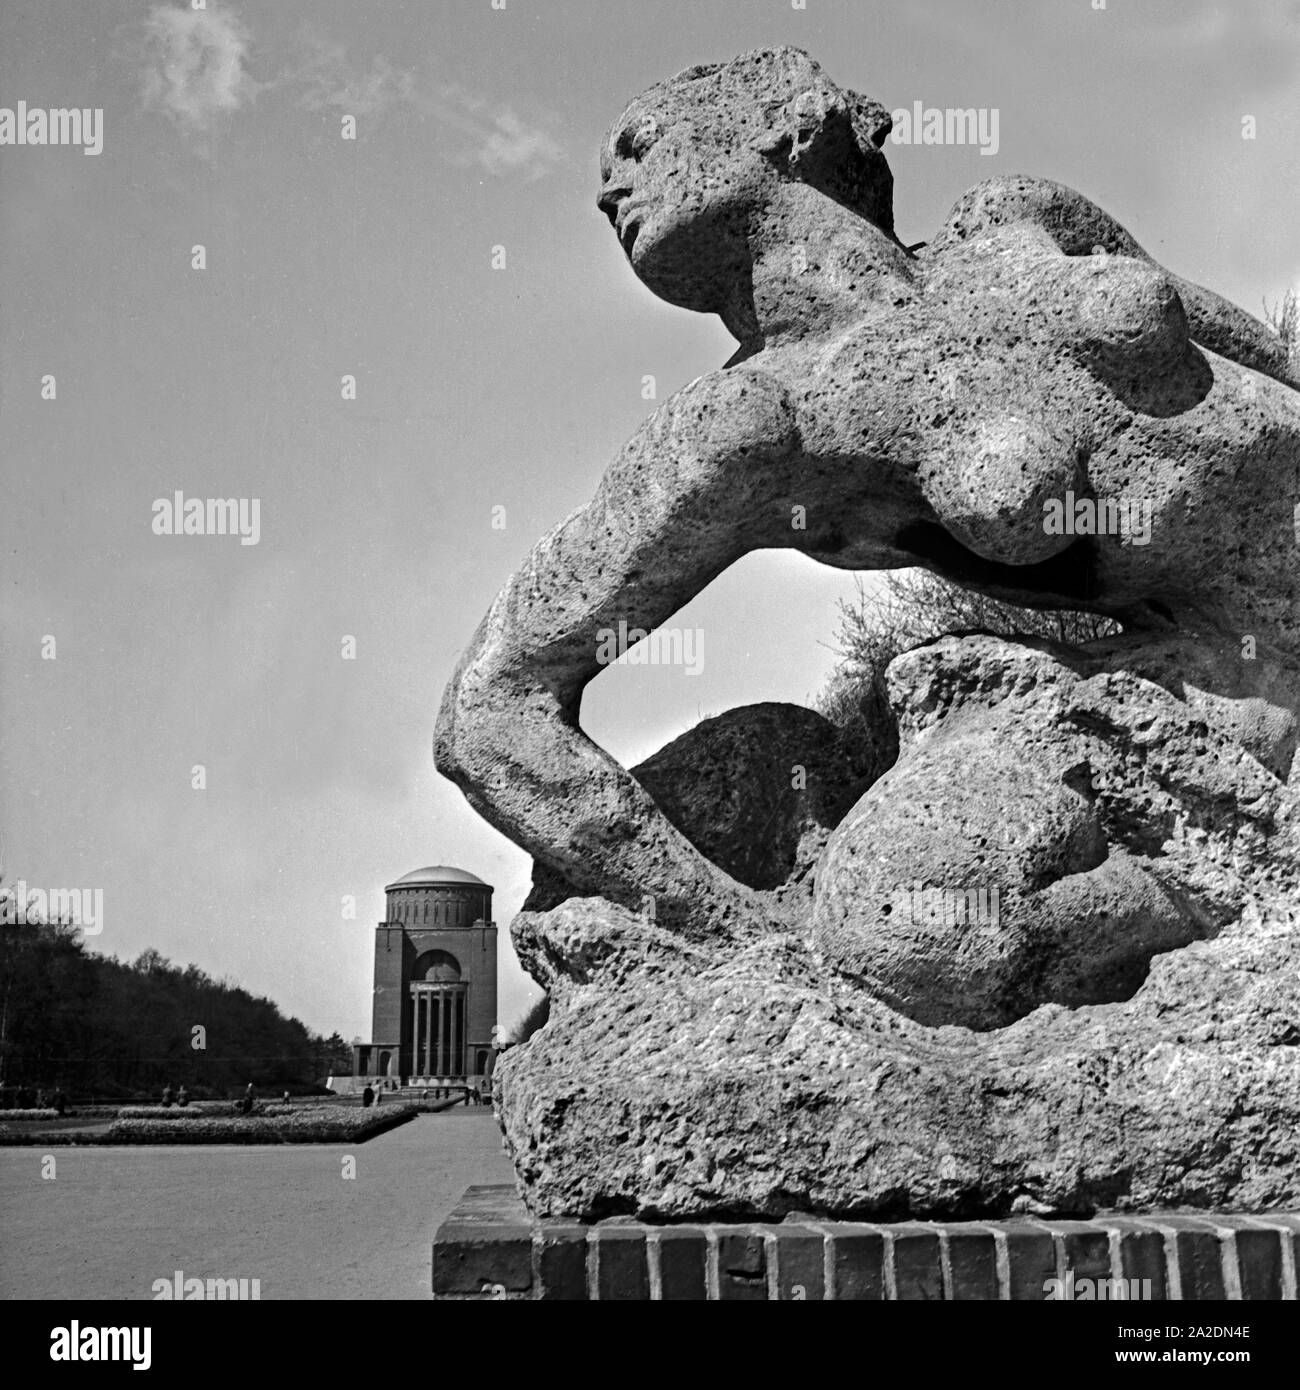 Im Stadtpark mit dem Planetarium und der Skulptur 'Badende' von Georg Kolbe in Hamburg, Deutschland 1930er Jahre. Sculpture and observatory at the city park Hamburg, Germany 1930s. Stock Photo